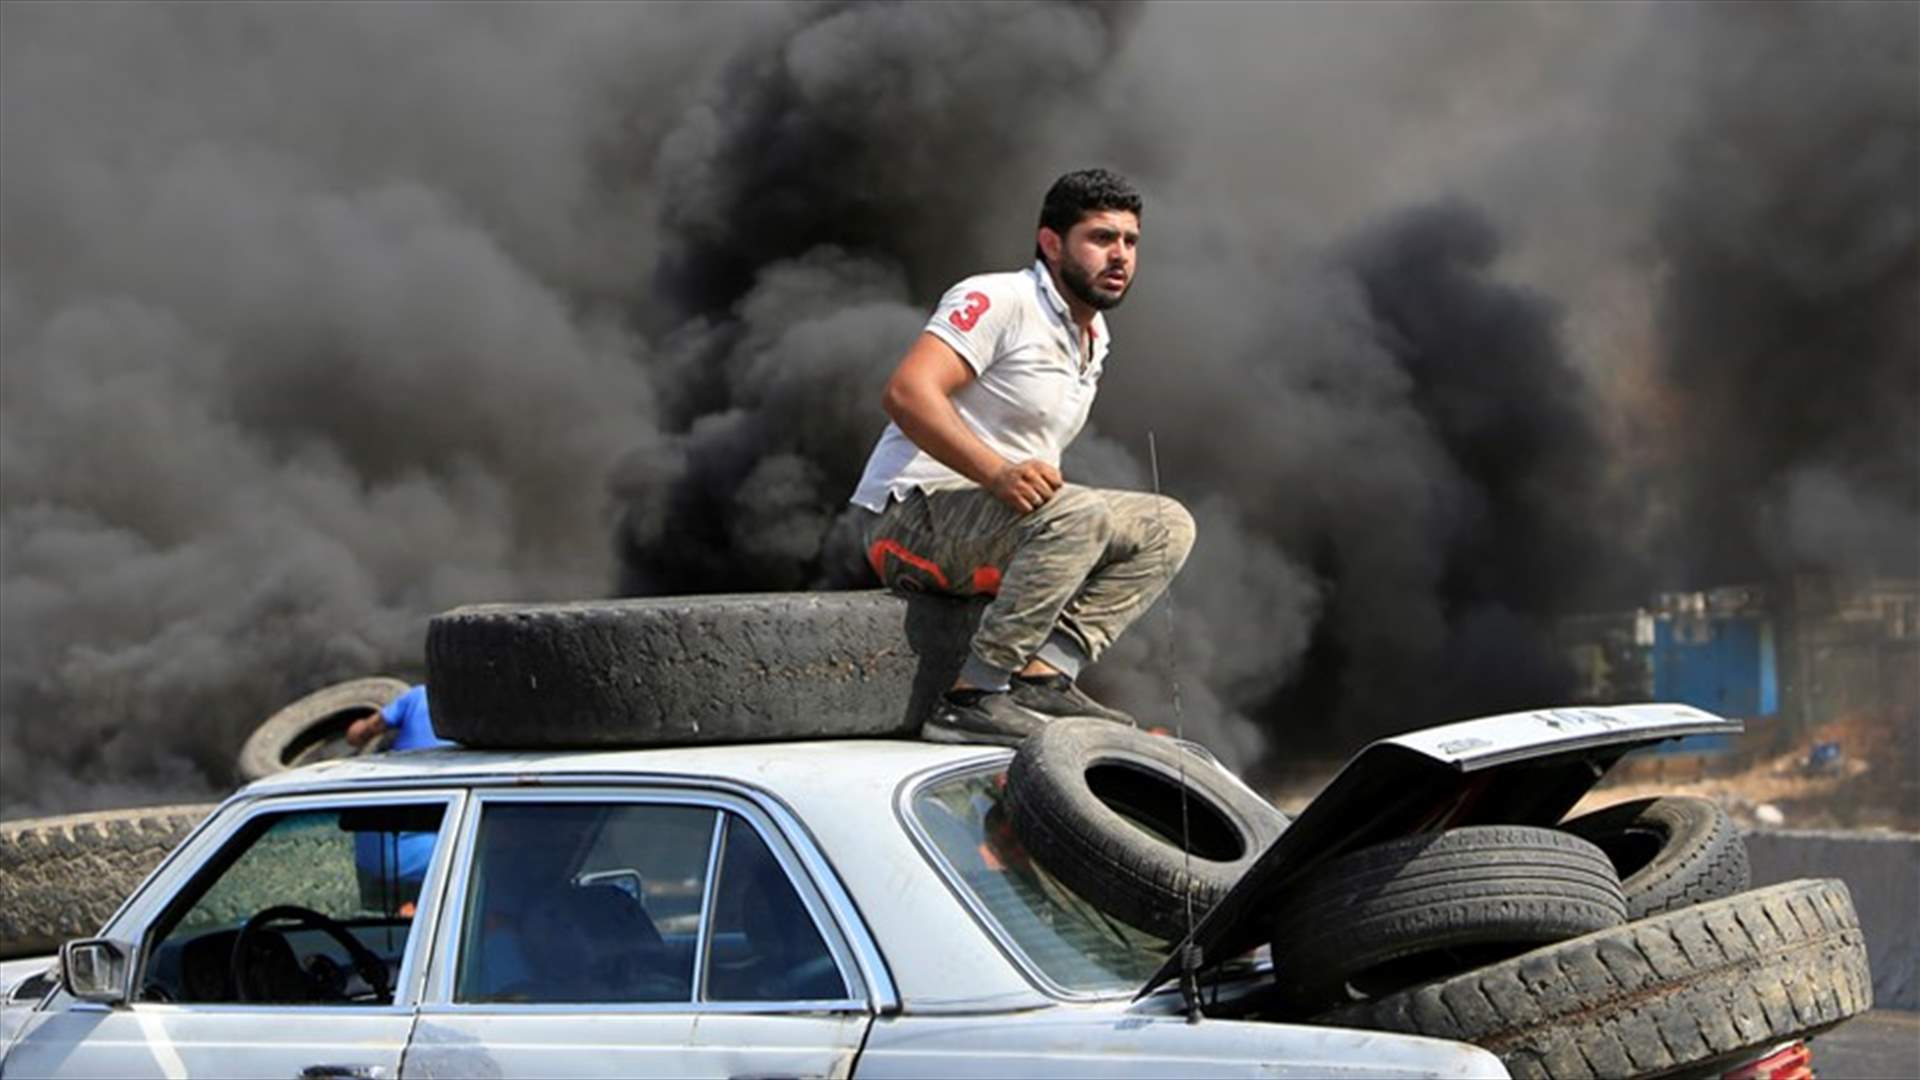 صور مميزة لوكالة رويترز توثّق التظاهرات في مختلف المناطق اللبنانية